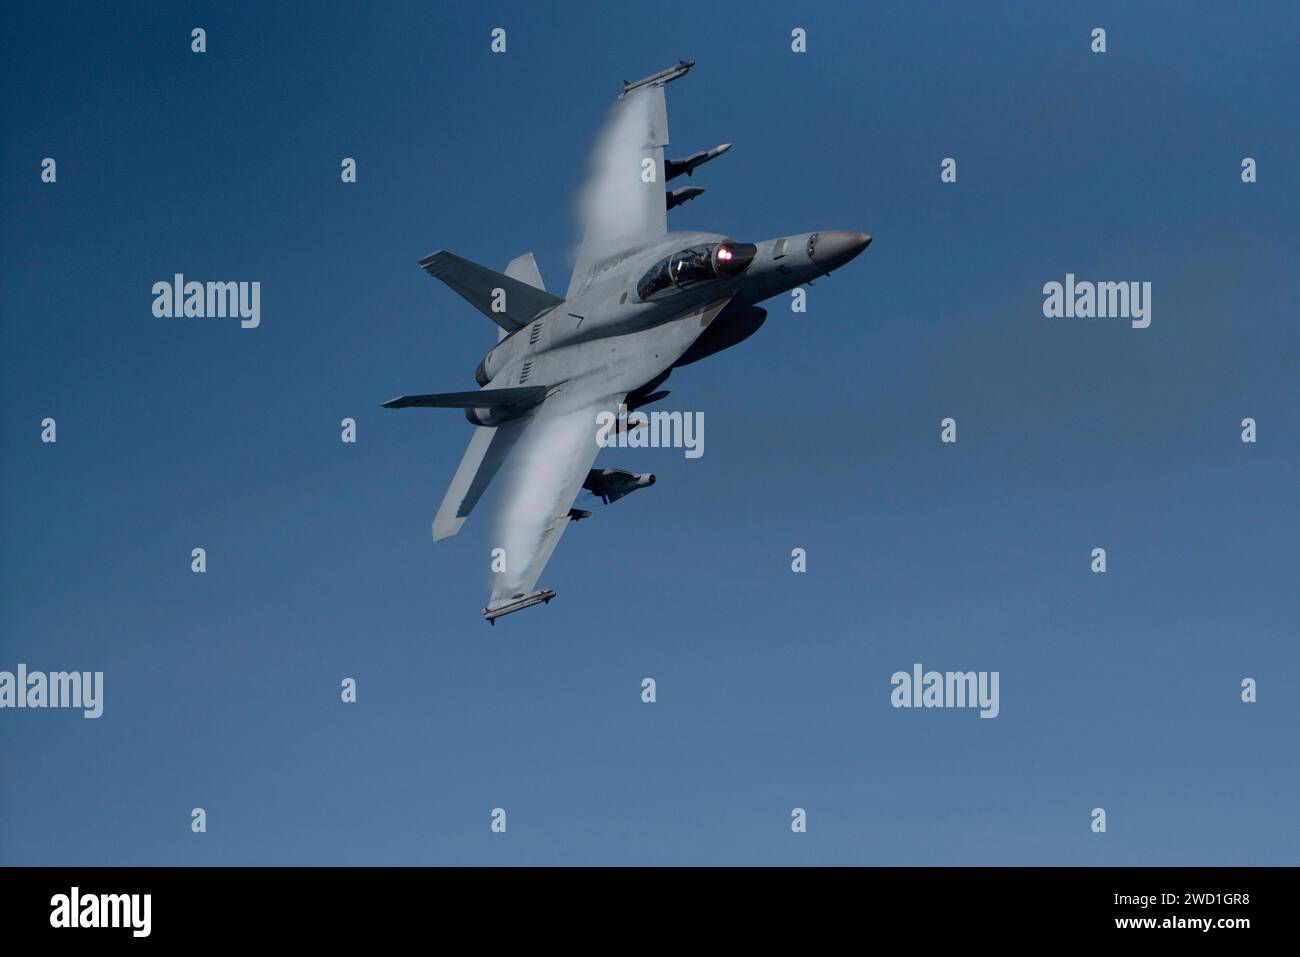 An F/A-18F Super Hornet flies at high-speed. Stock Photo